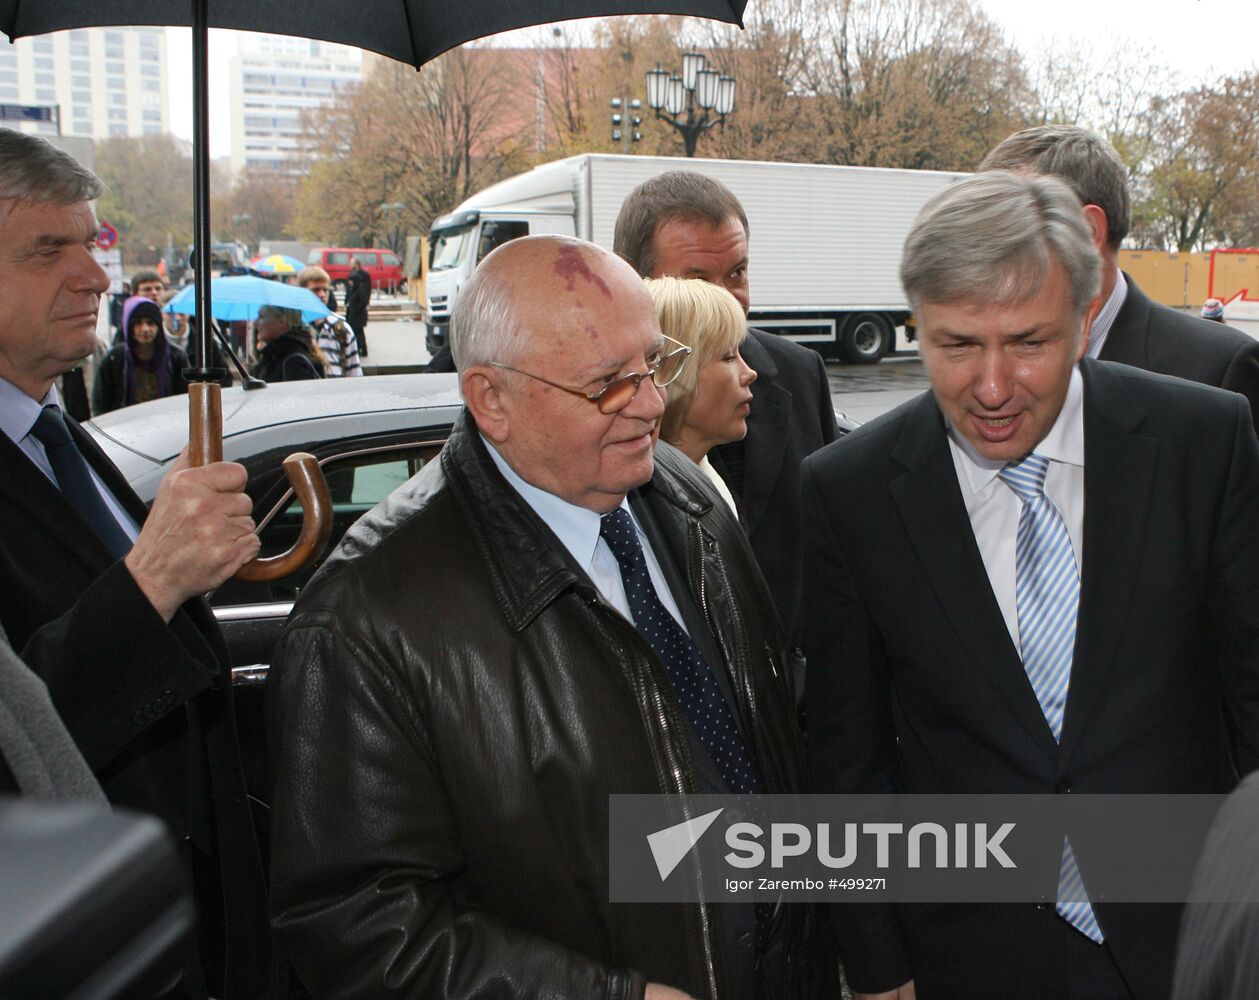 Mikhail Gorbachev in Berlin